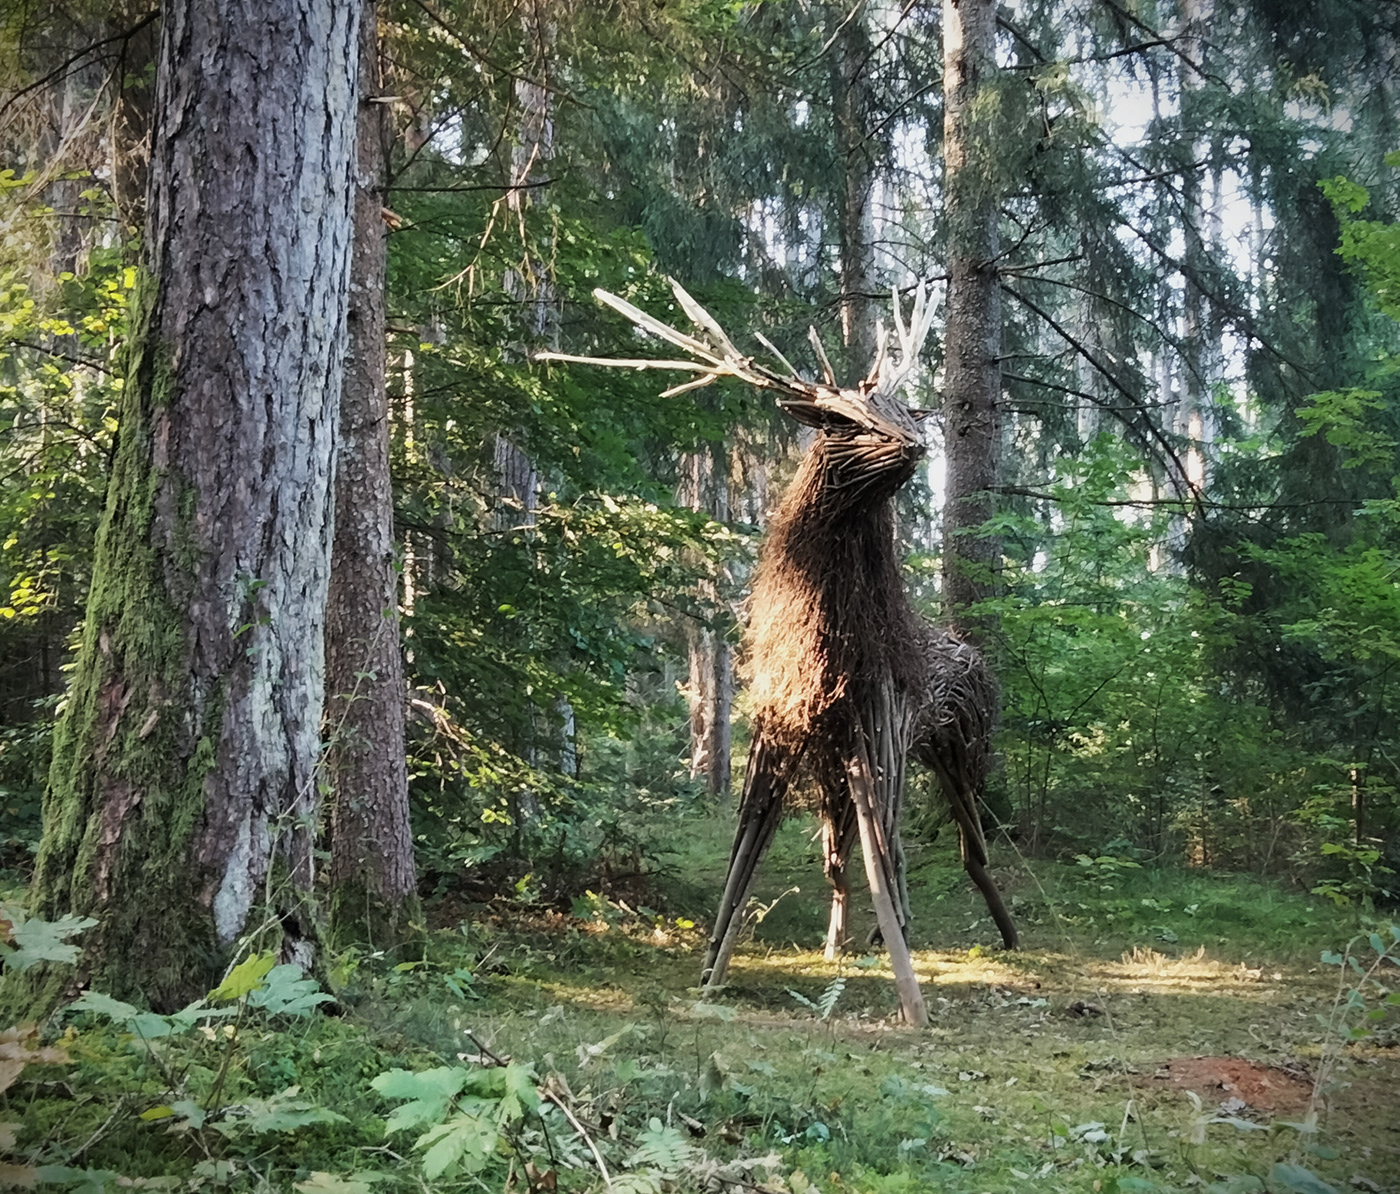 landart sculpture installation wood Nature mountains deer animal environment Landscape